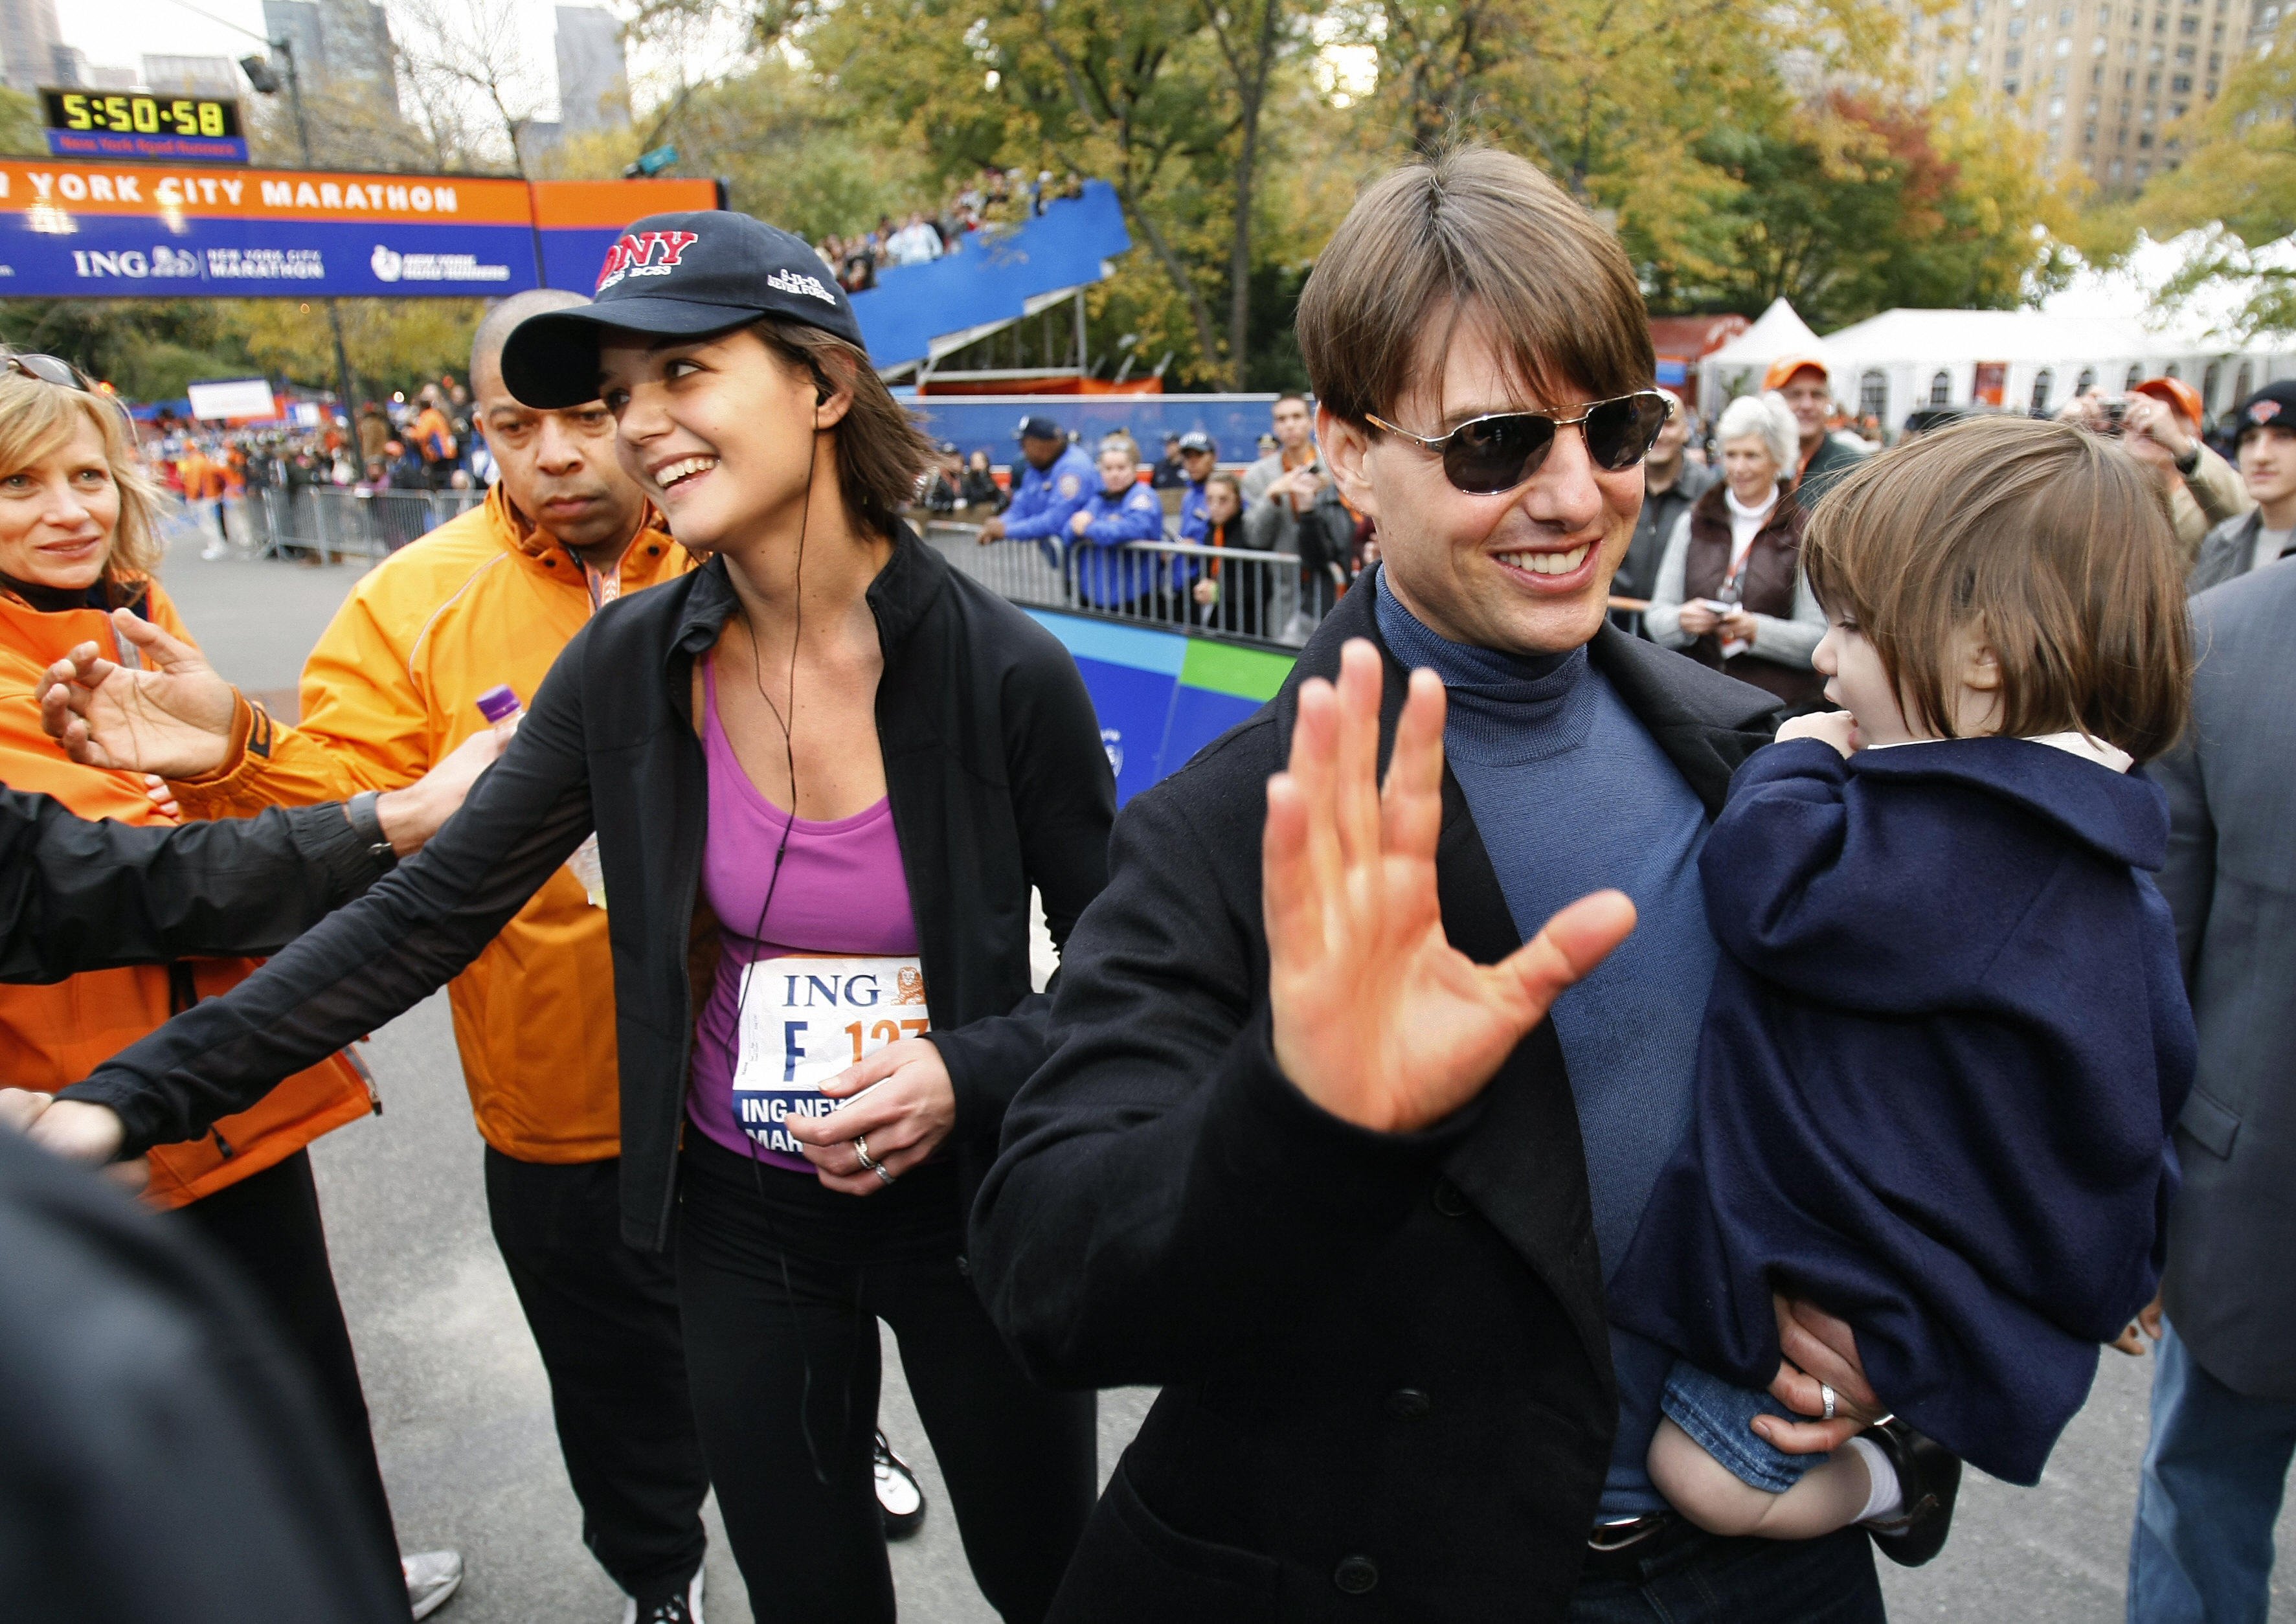 Ο Τομ Κρουζ με την κόρη του Σούρι συναντούν την Κέιτι Χολμς στη γραμμή τερματισμού του Μαραθωνίου της Νέας Υόρκης το 2007. |  Πηγή: Getty Images